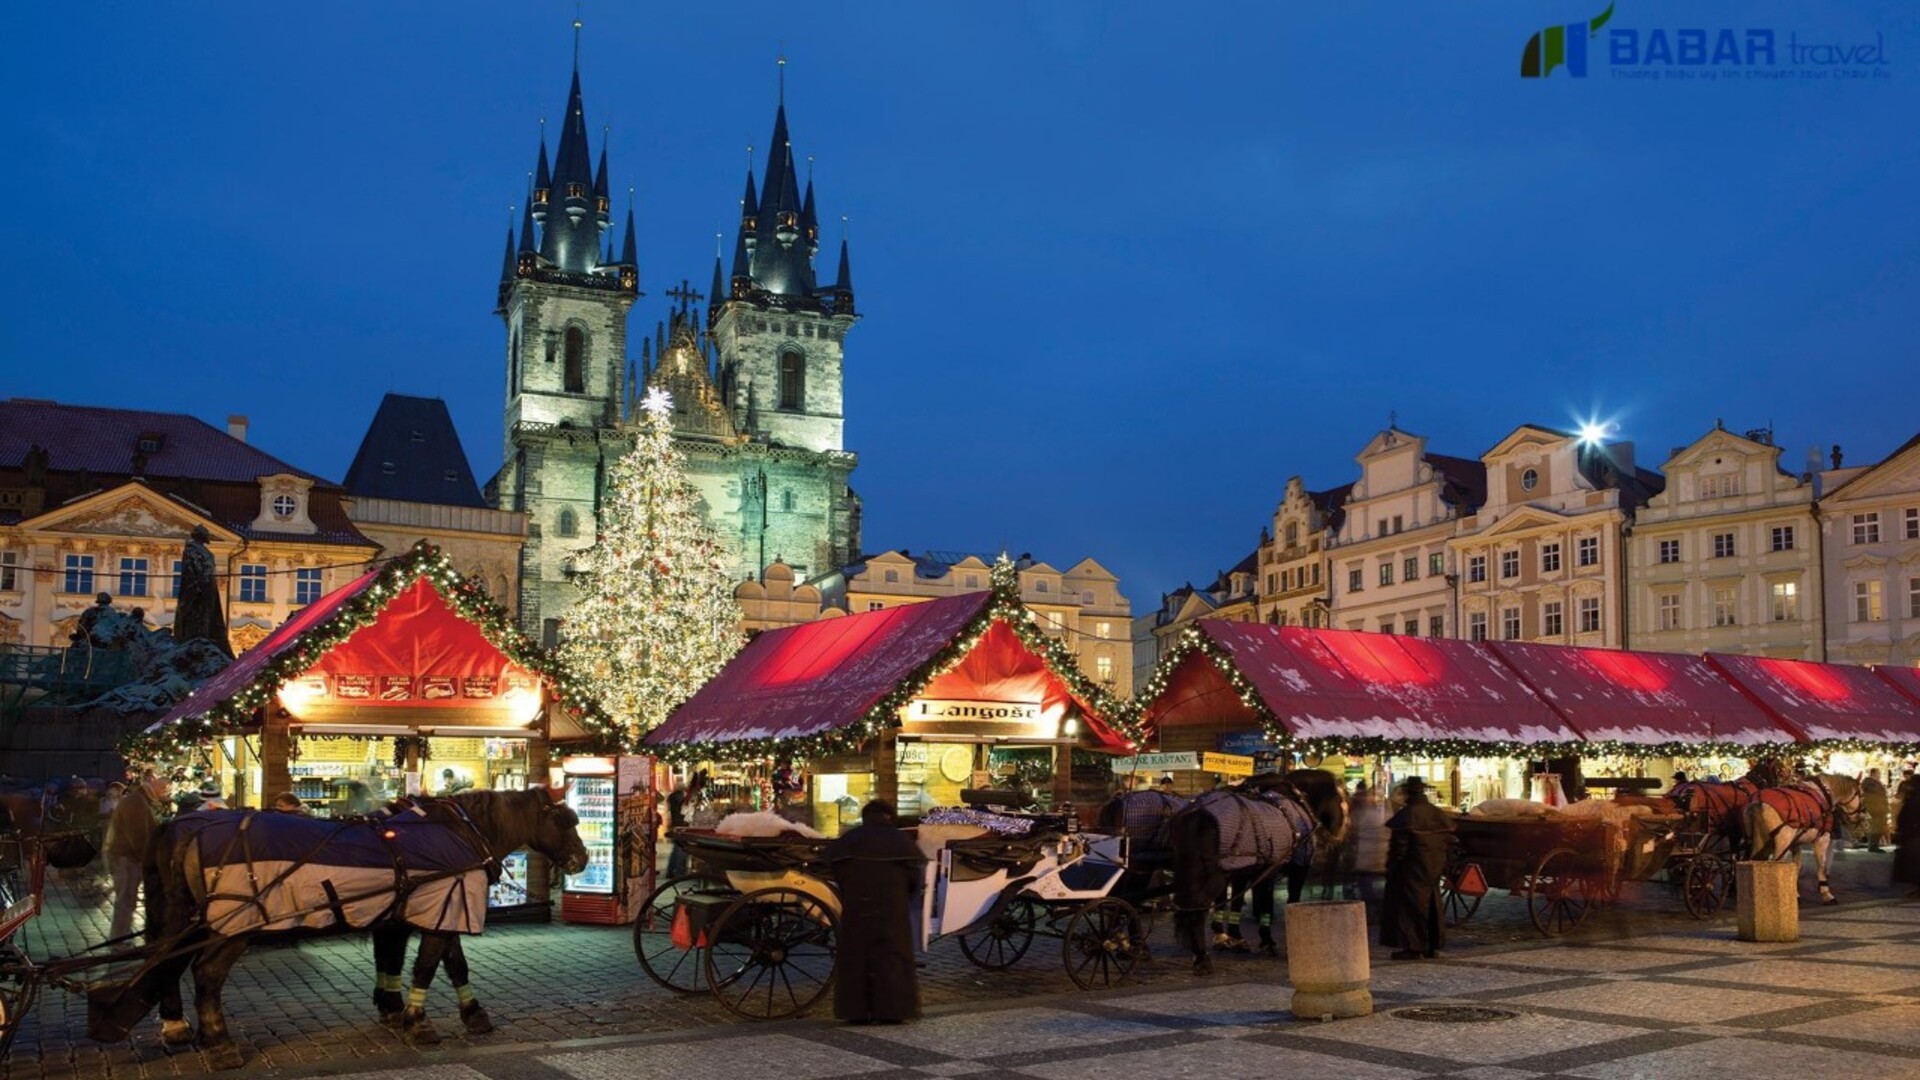 Giáng sinh tại Praha là điểm nổi bật nhất trong Tour Châu Âu 6 nước 12 ngày: Pháp - Đức - Áo - Slovakia - Hungary - Séc